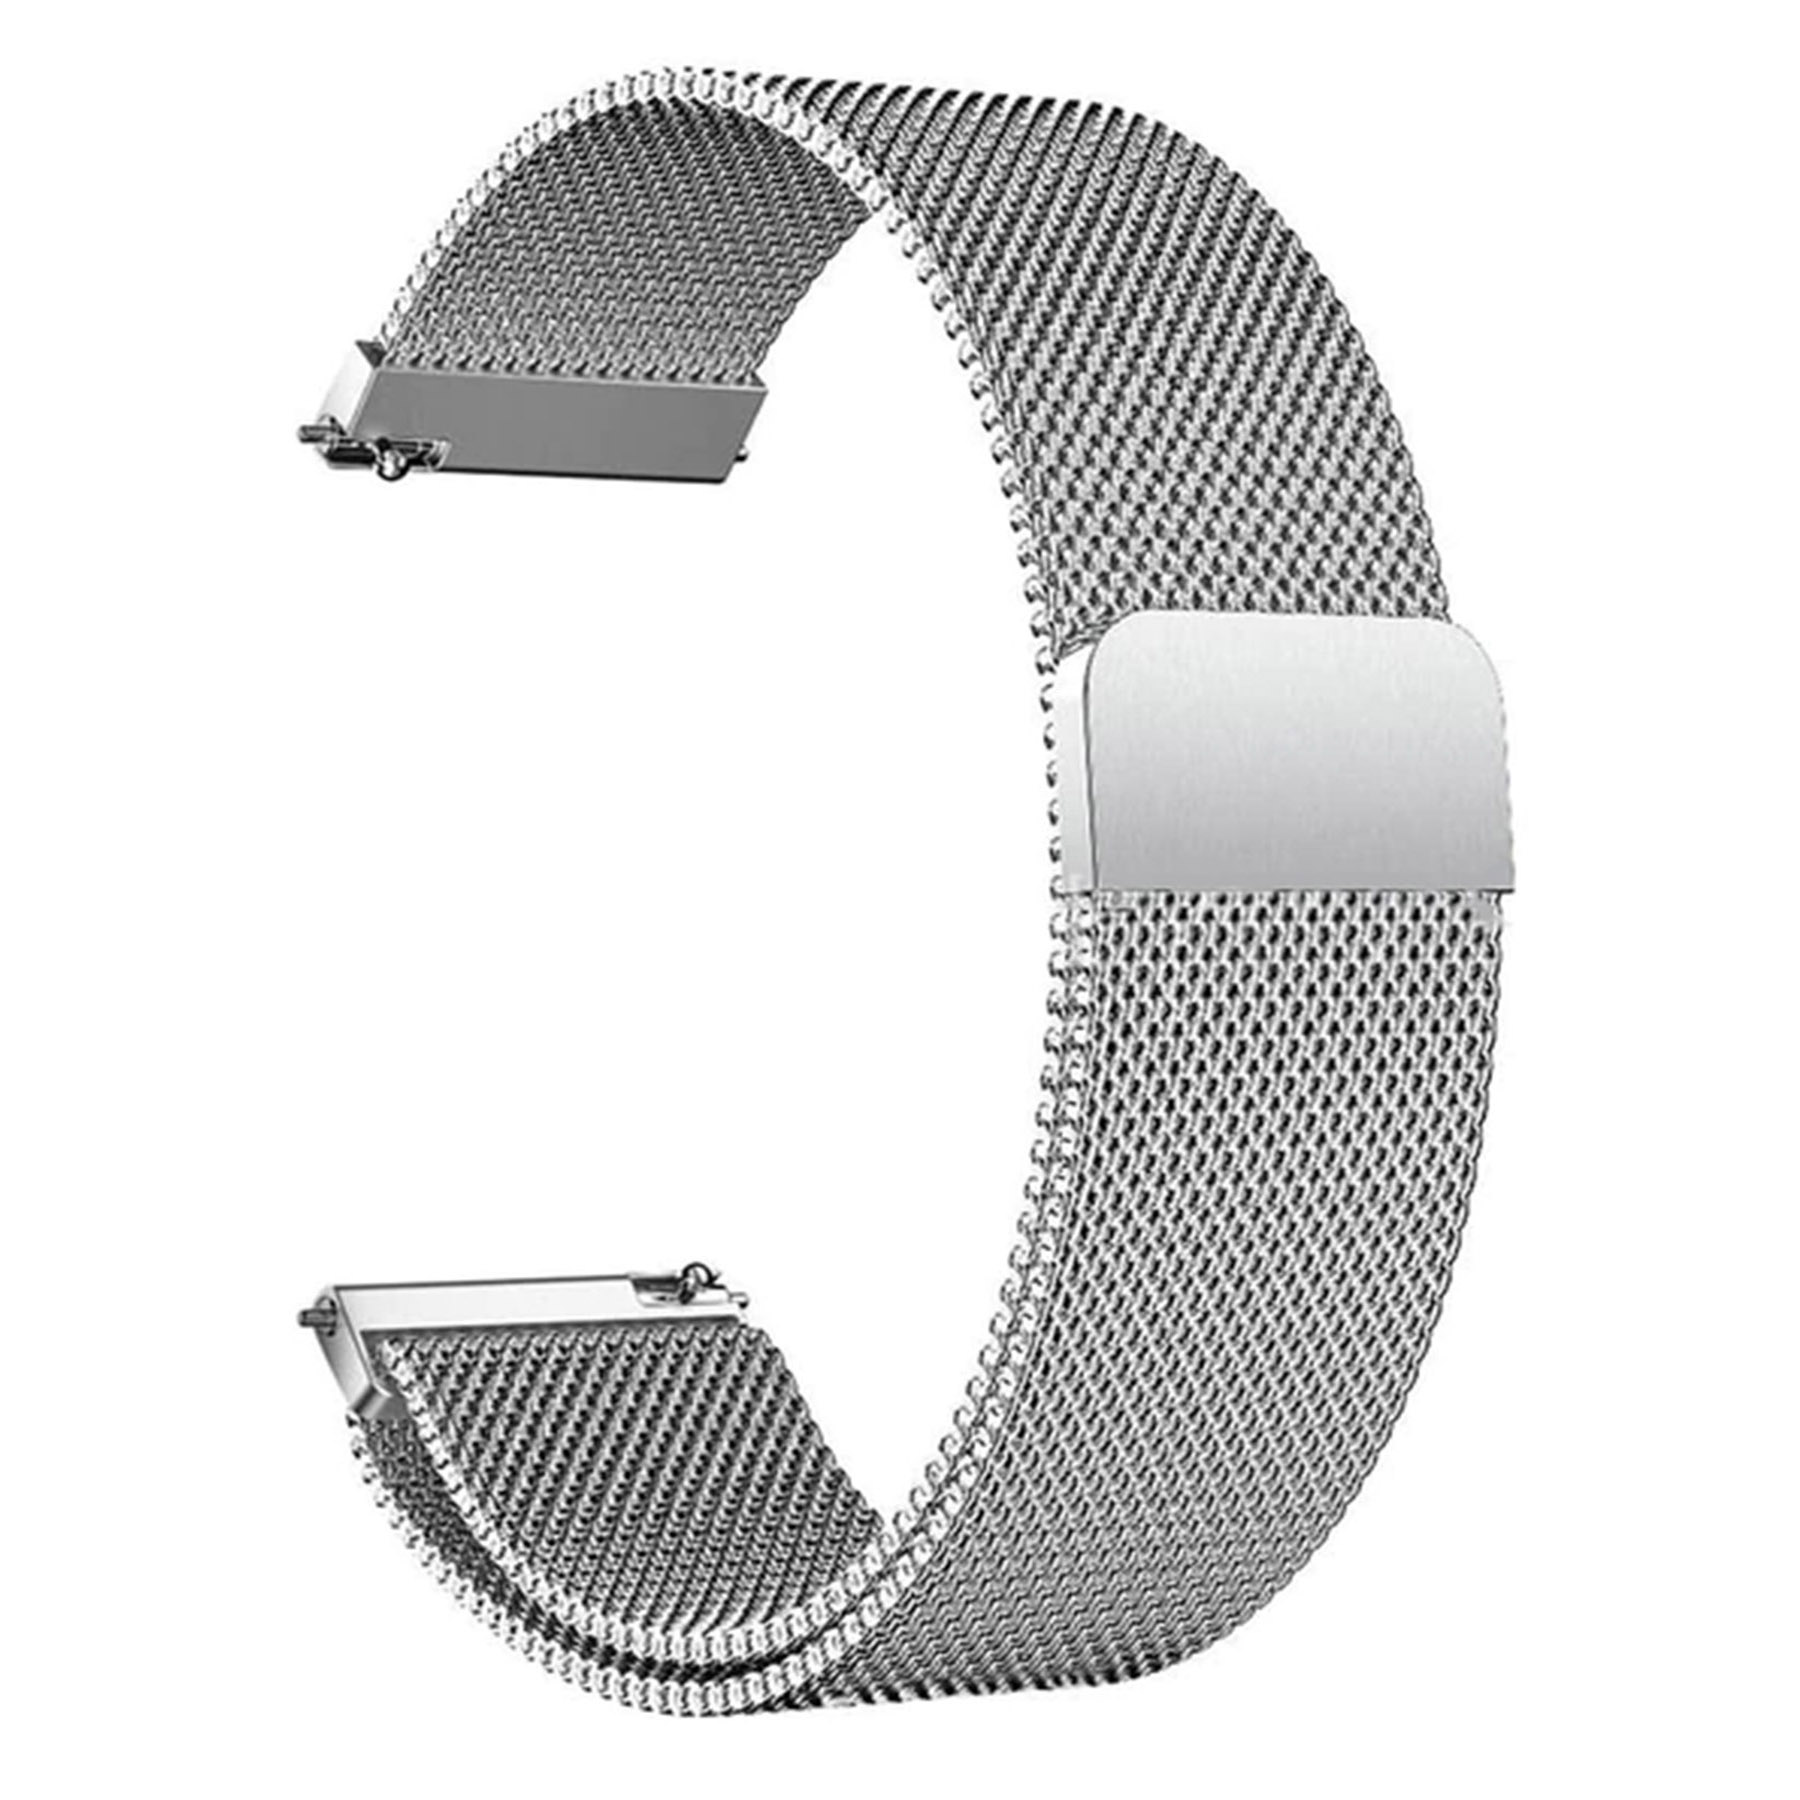 بند راینو مدل Milanese مناسب برای ساعت هوشمند میبرو Air